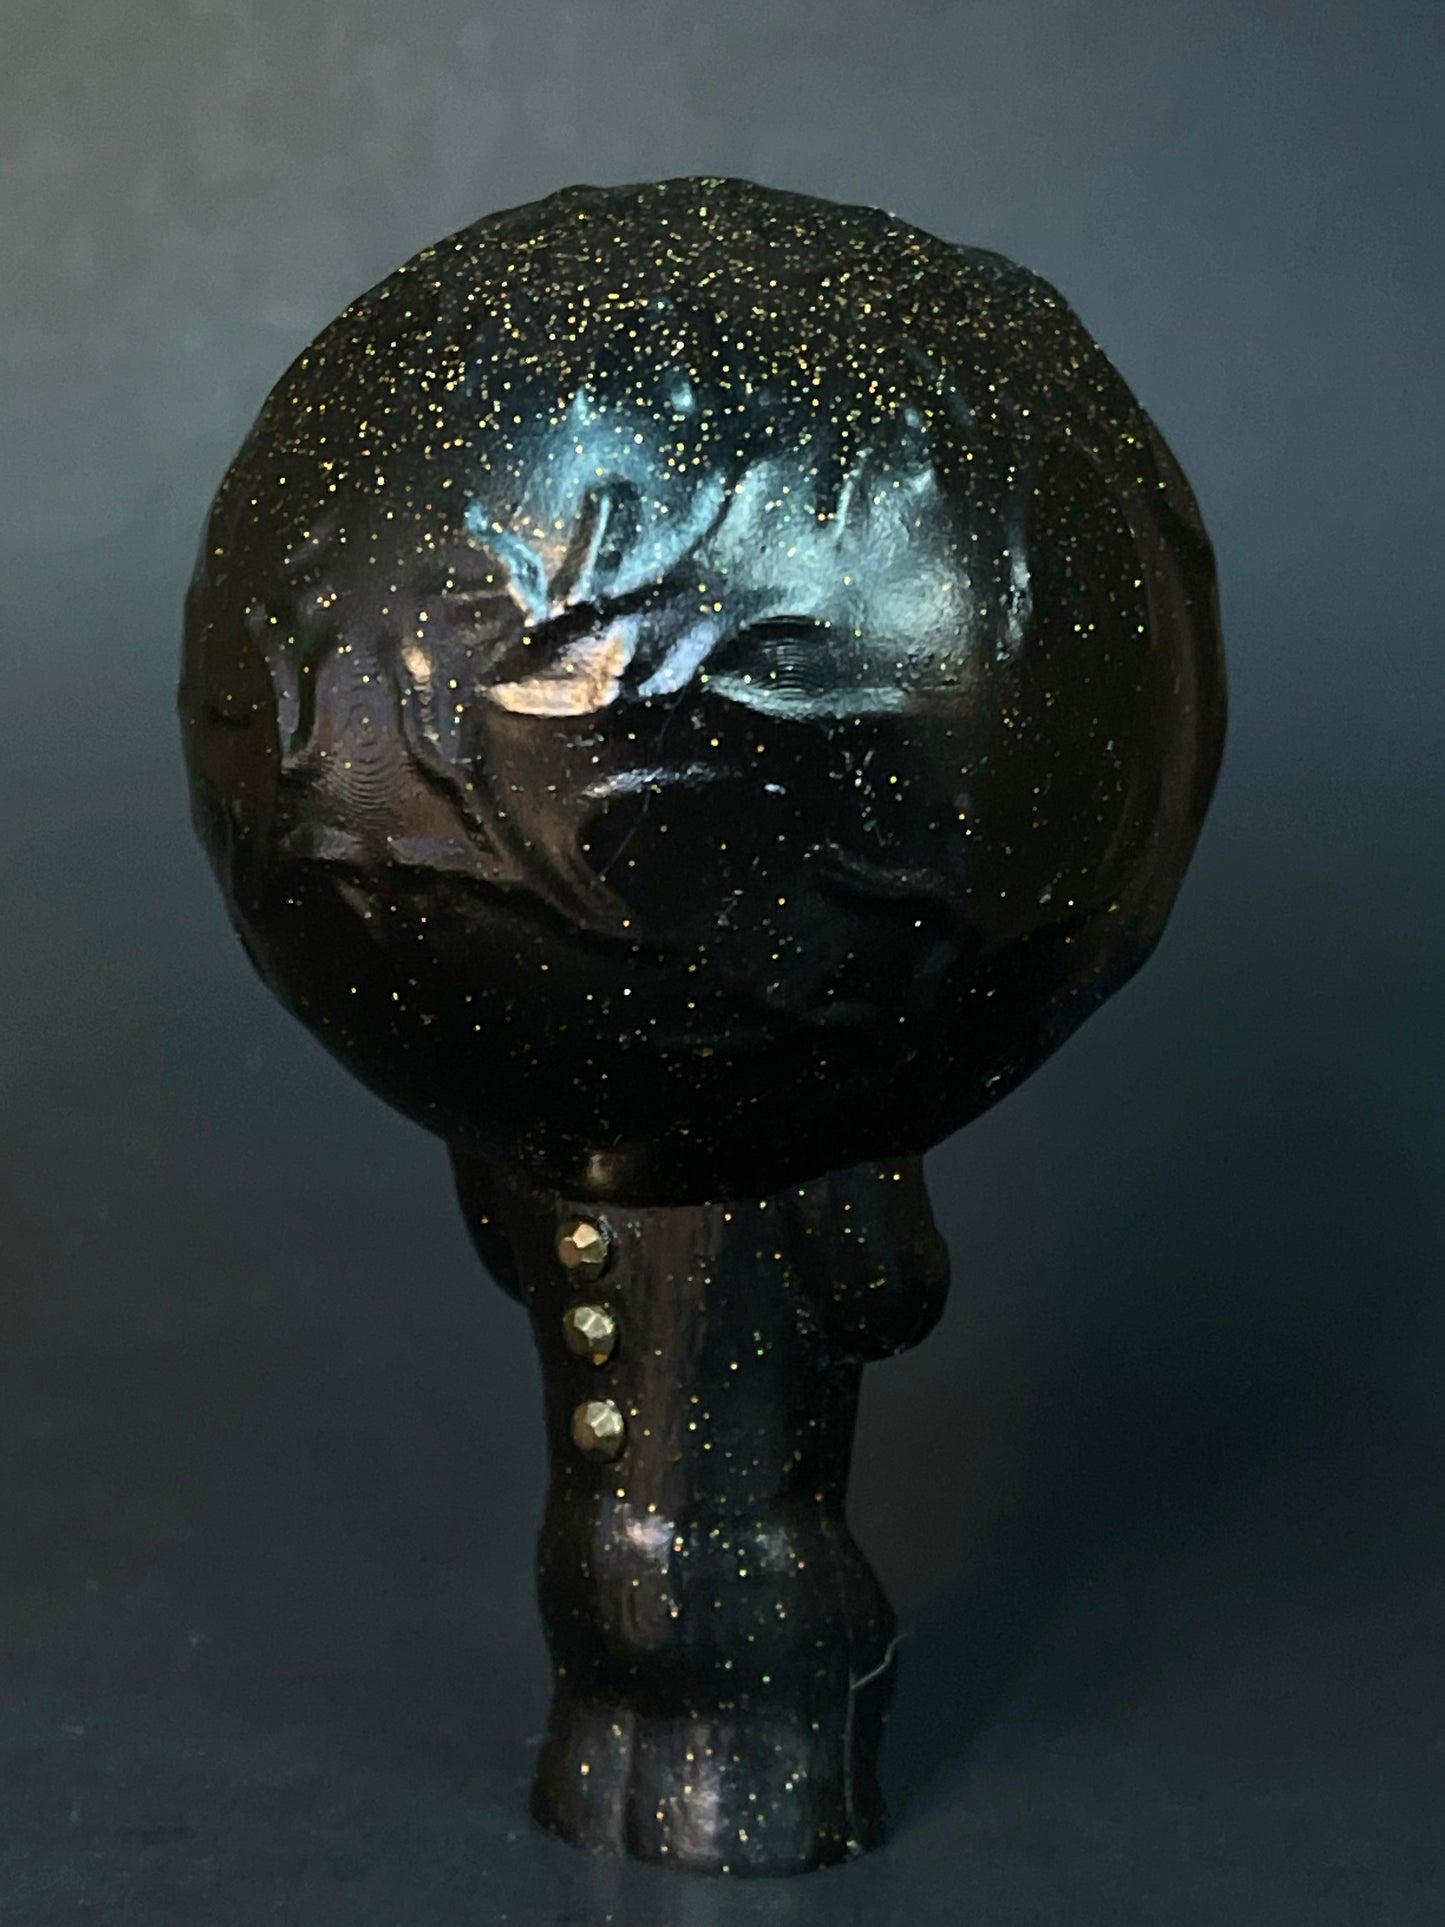 Moon Head Giant Head Freak: Idol of Billions